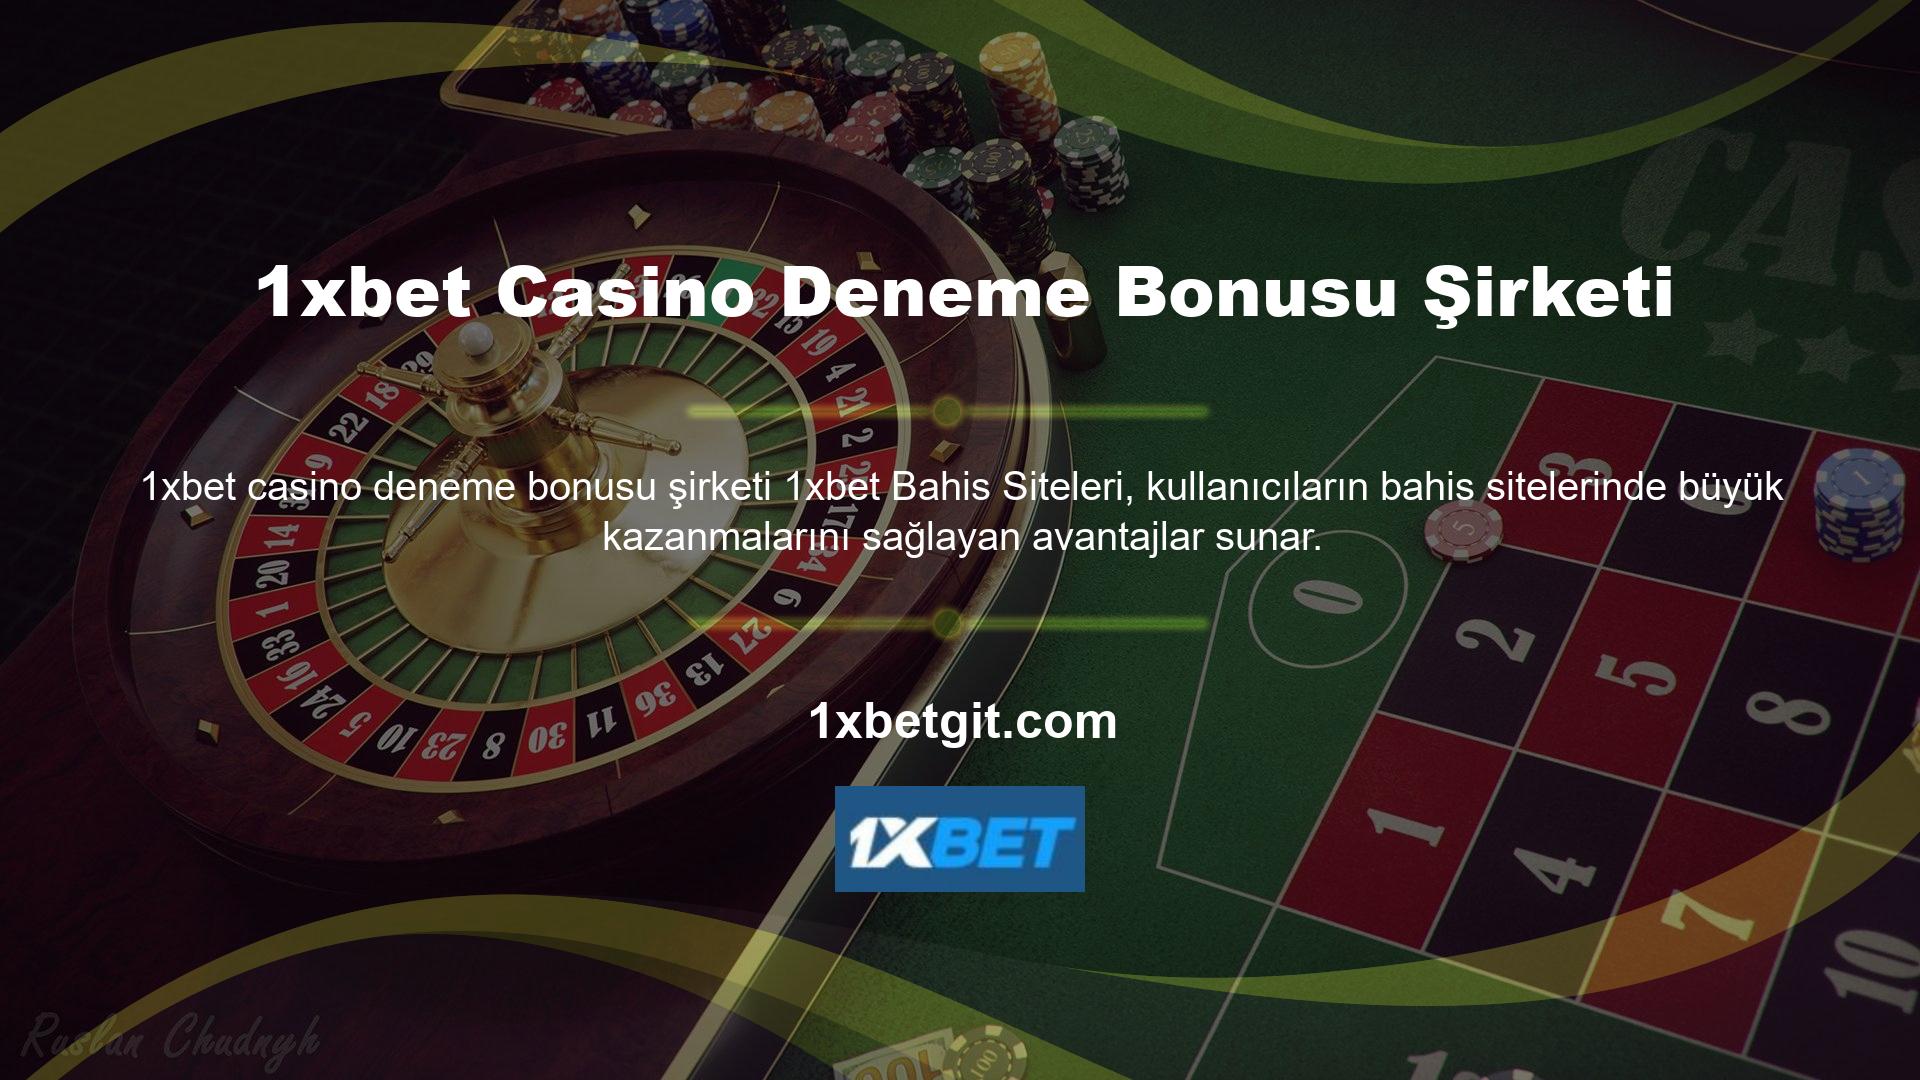 Casino tutkunları, site içi alanlardan yararlanarak paralarını ikiye katlayabilirler